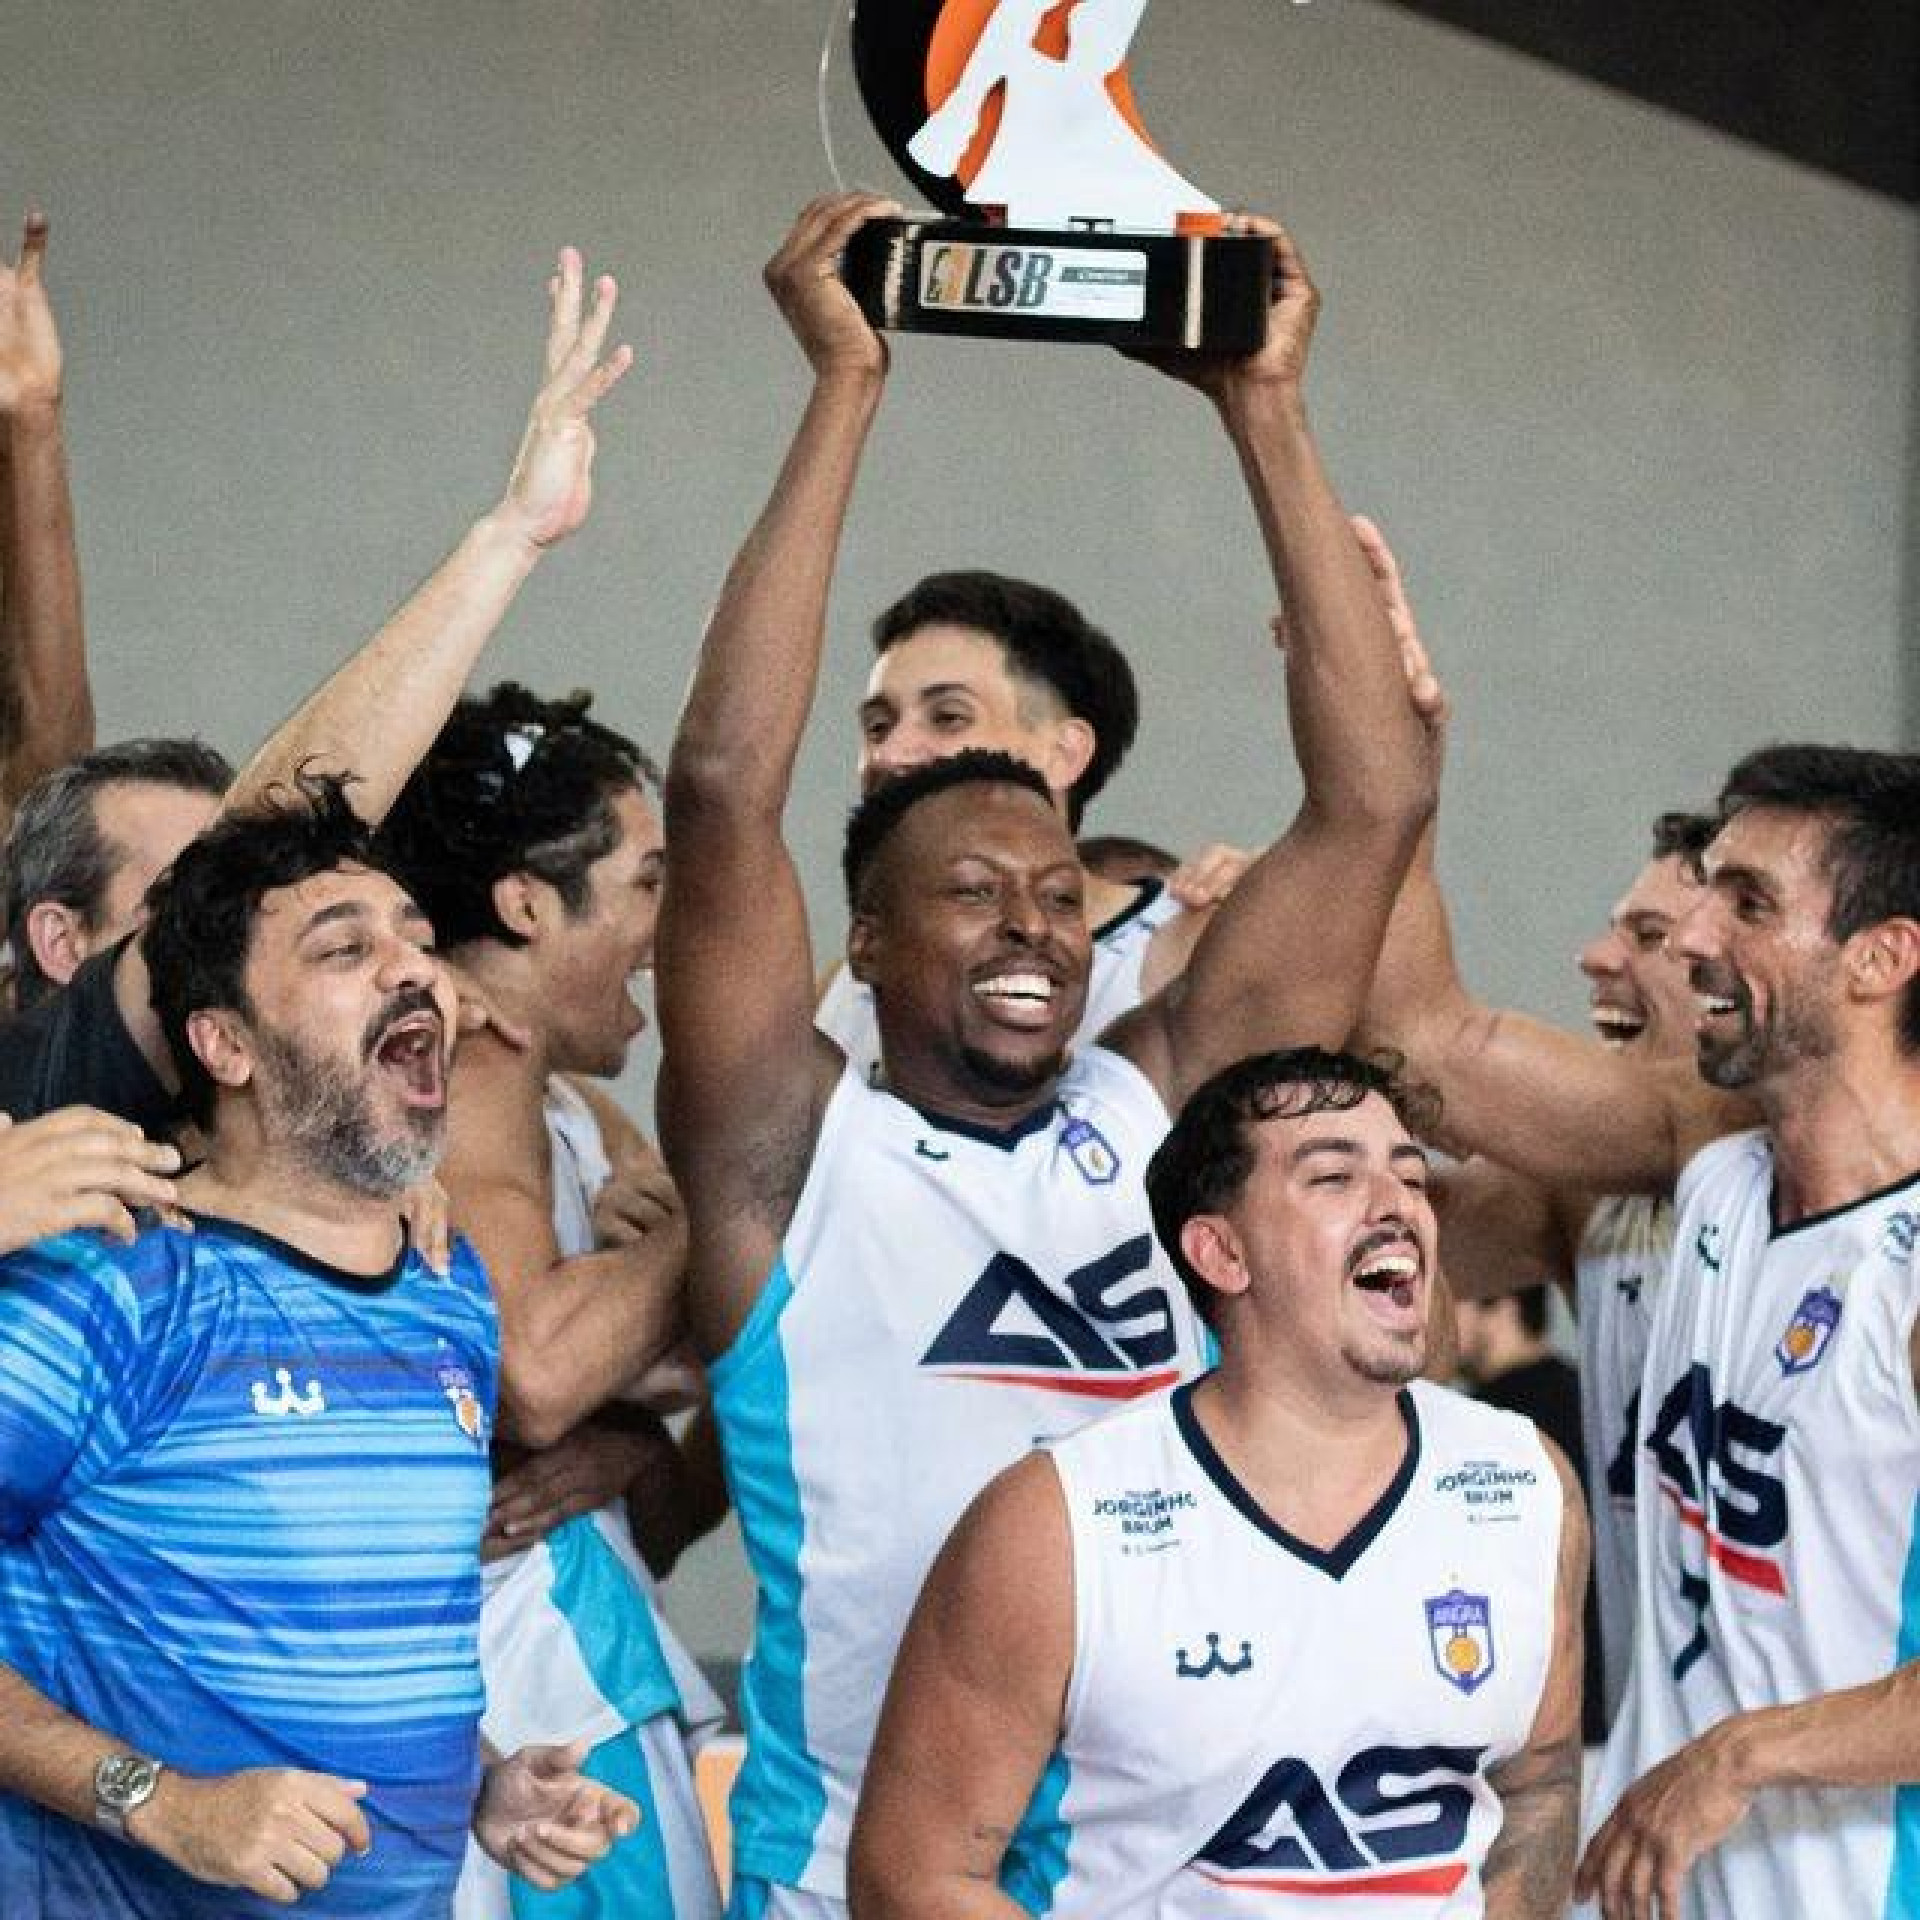 A vitória do ano passado garantiu a equipe a estreia na série ouro, segunda fase, do campeonato - Divulgação/Angra Basquete